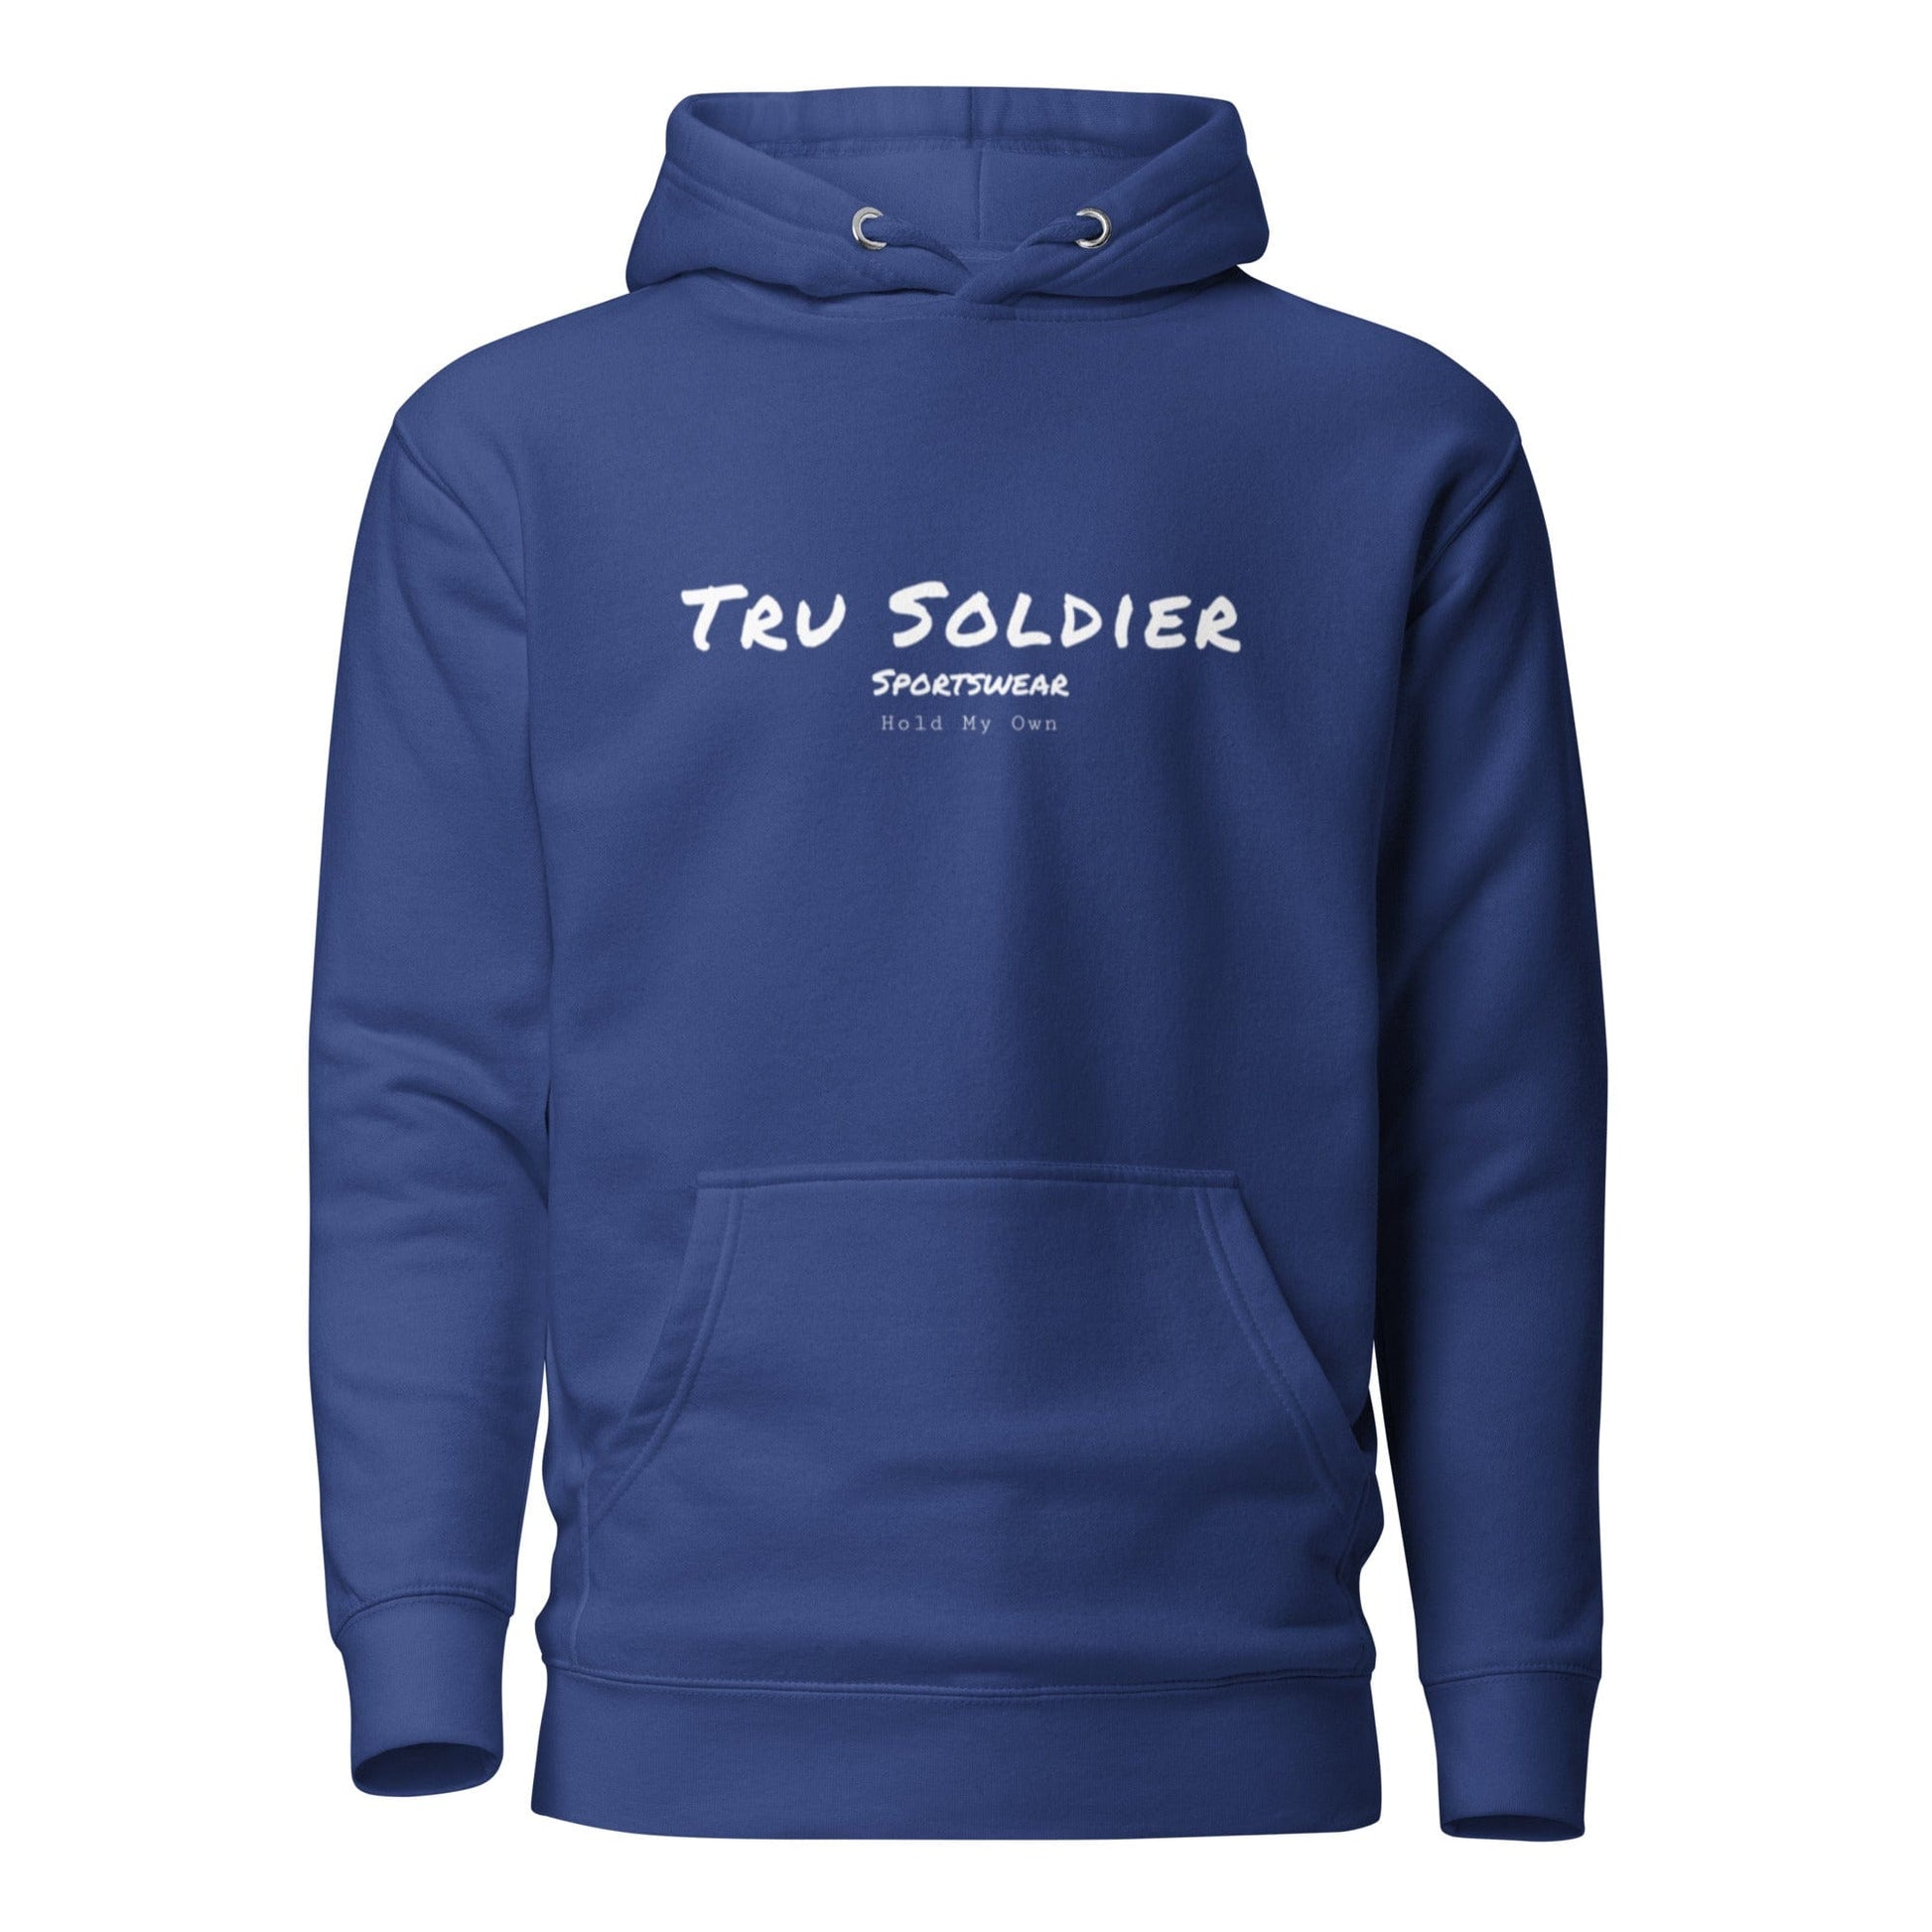 Tru Soldier Sportswear  Team Royal / S Signature Hoodie